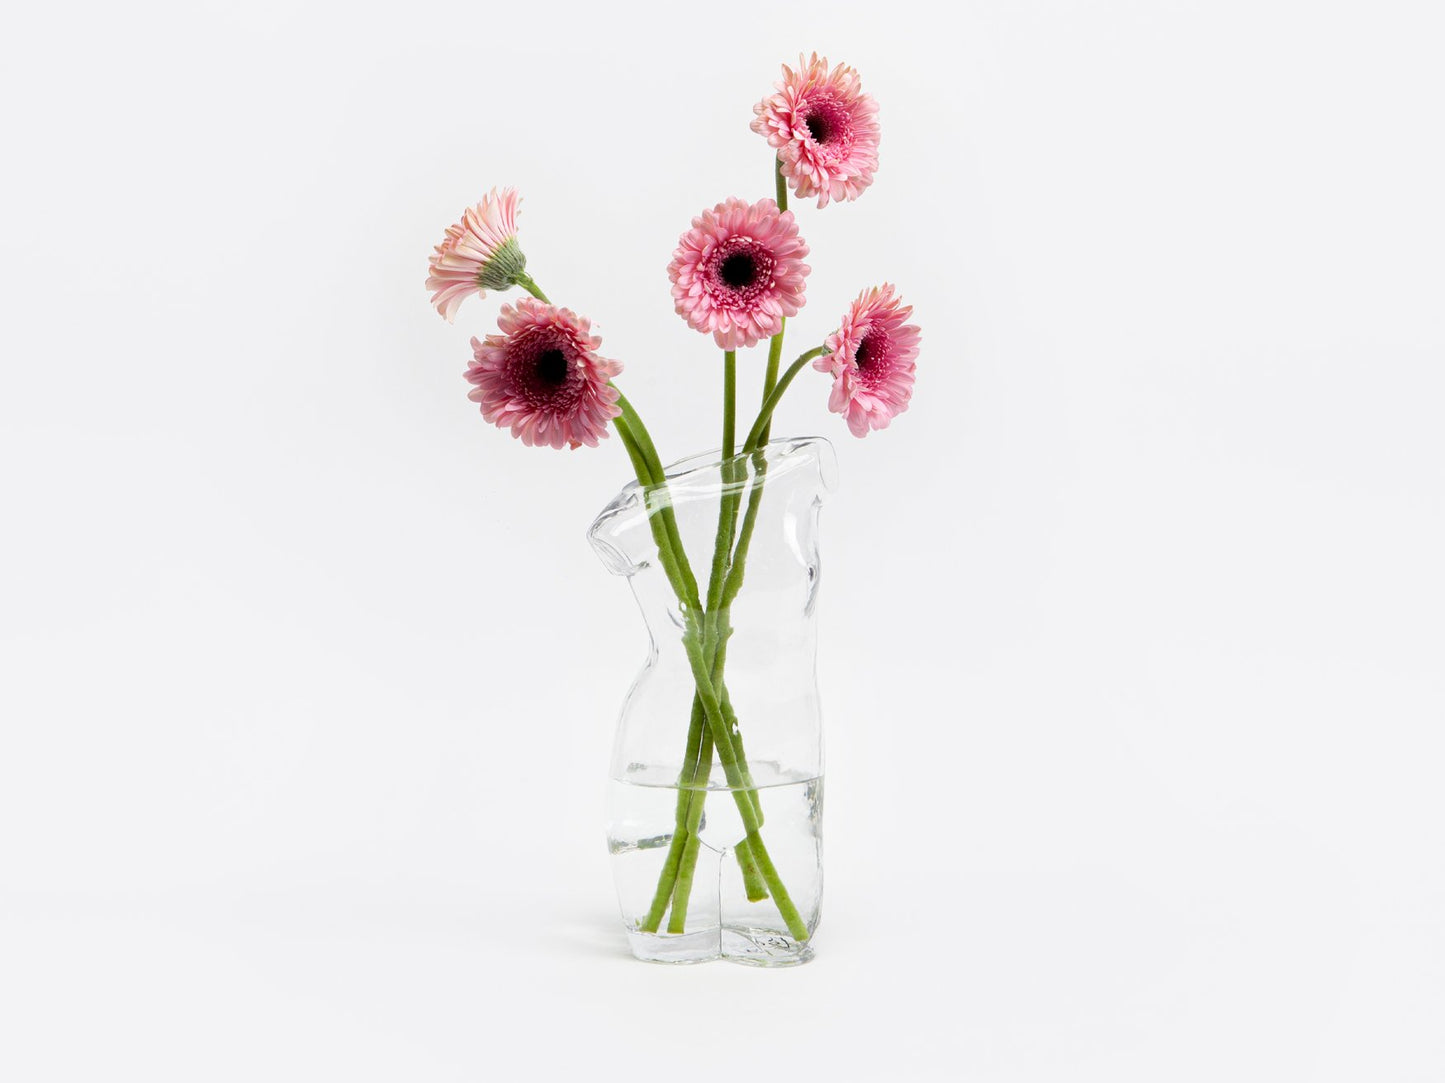 Body Glass Vase